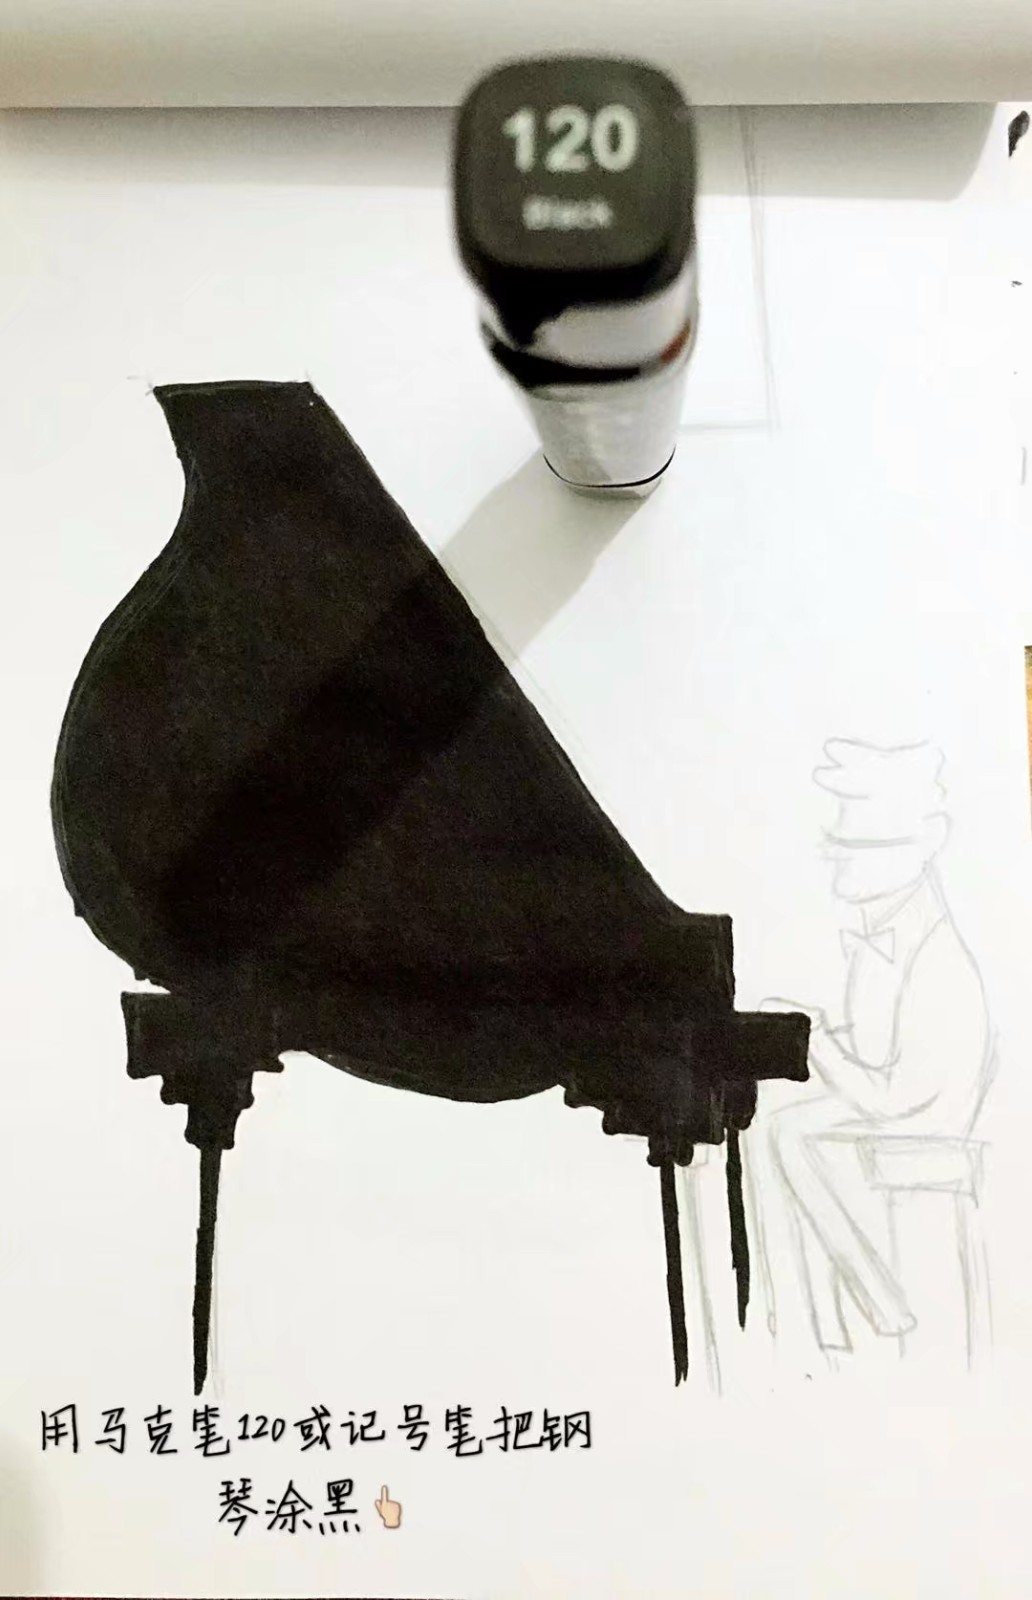 钢琴手绘马克笔效果图图片